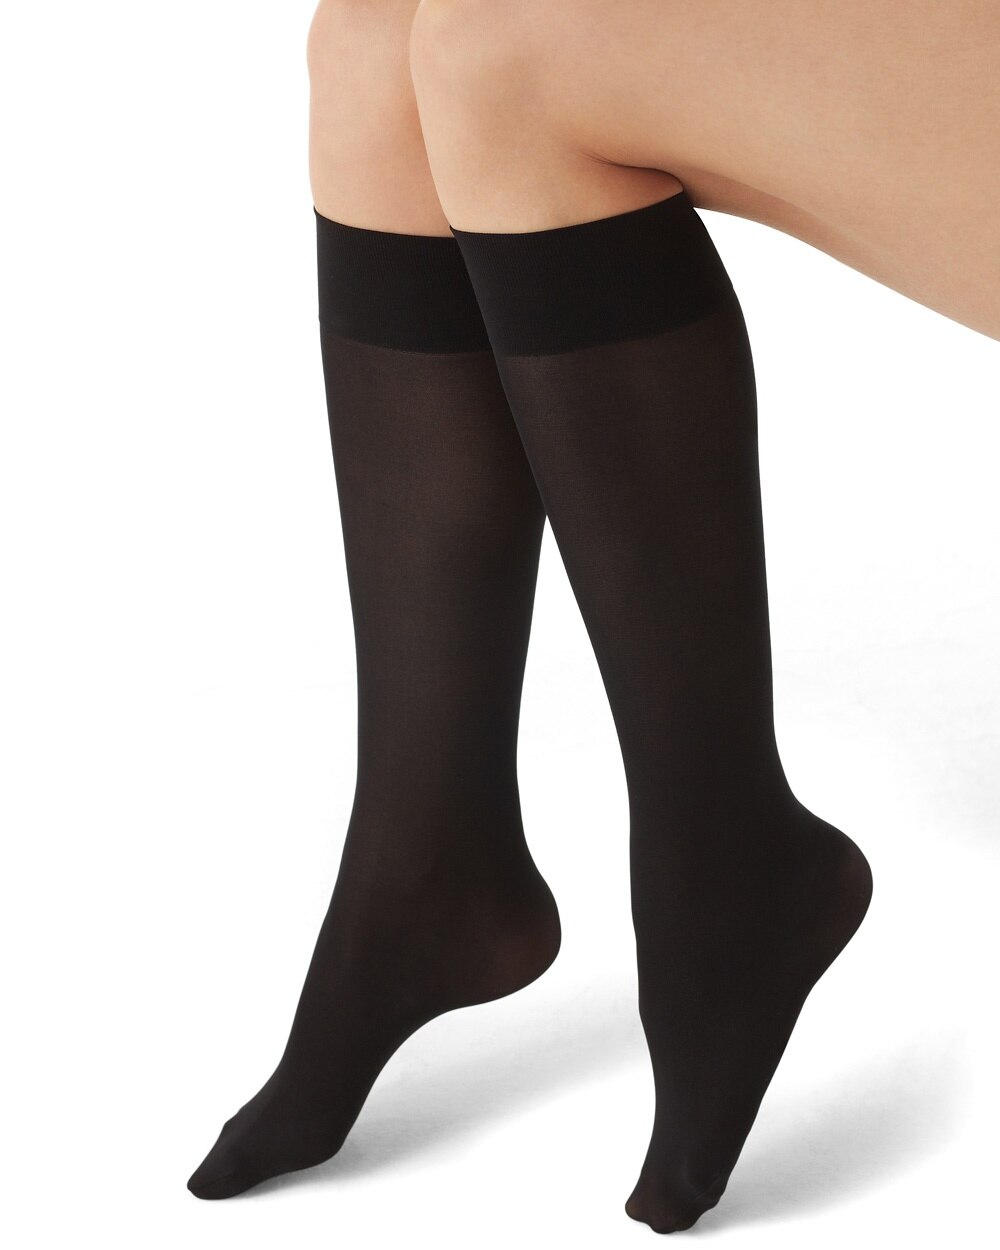 Black Socks  Buy Trendy Black Socks Online in India  Myntra